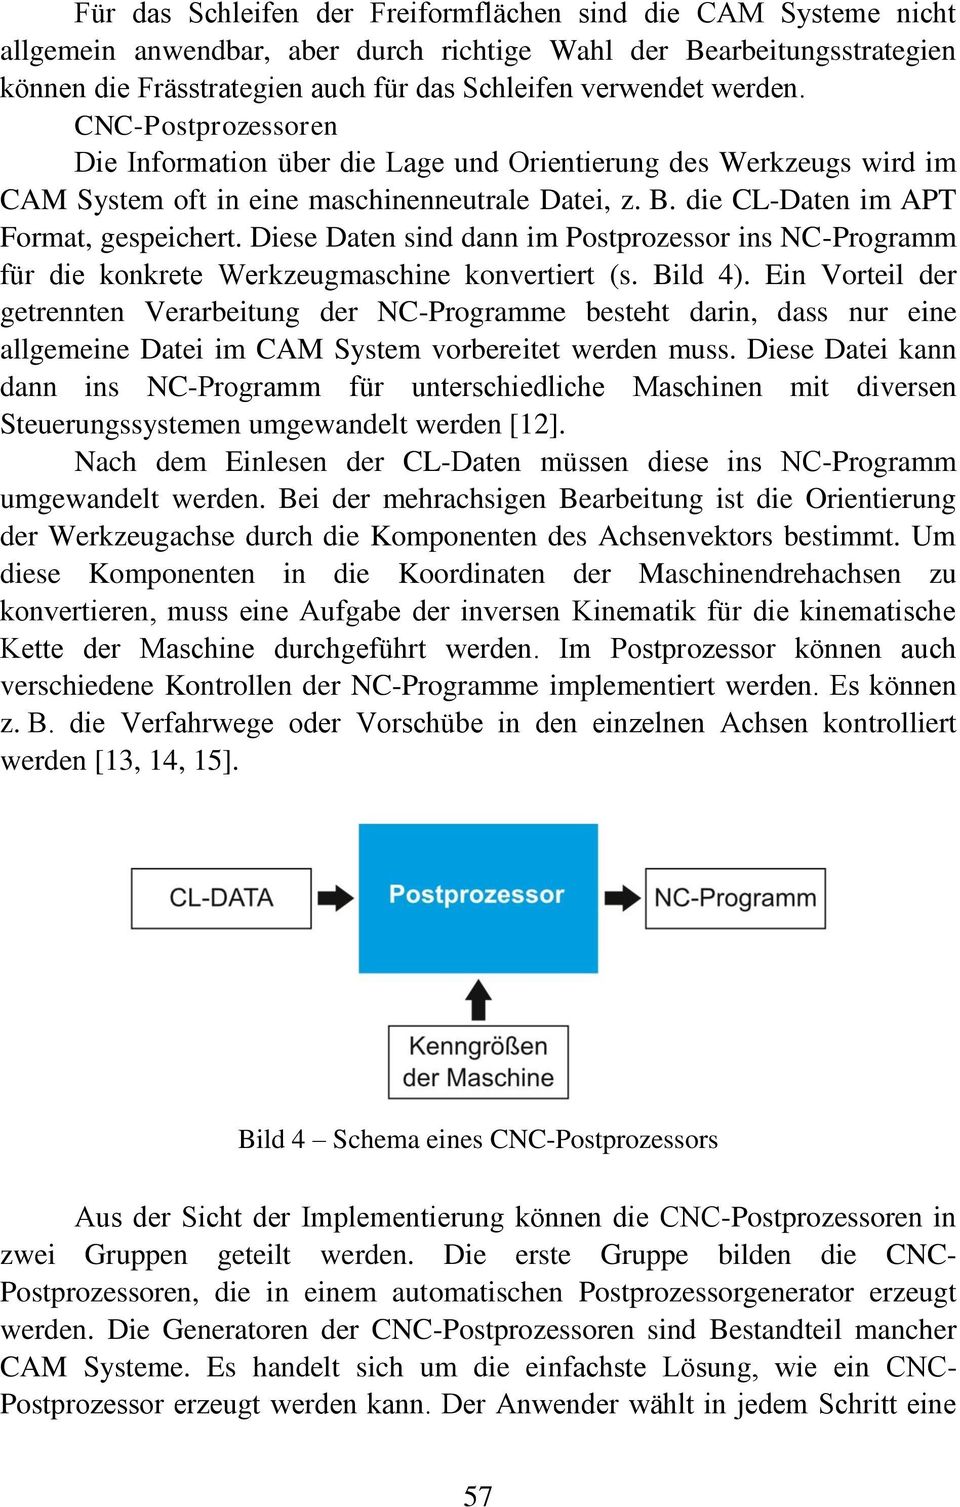 Diese Daten sind dann im Postprozessor ins NC-Programm für die konkrete Werkzeugmaschine konvertiert (s. Bild 4).